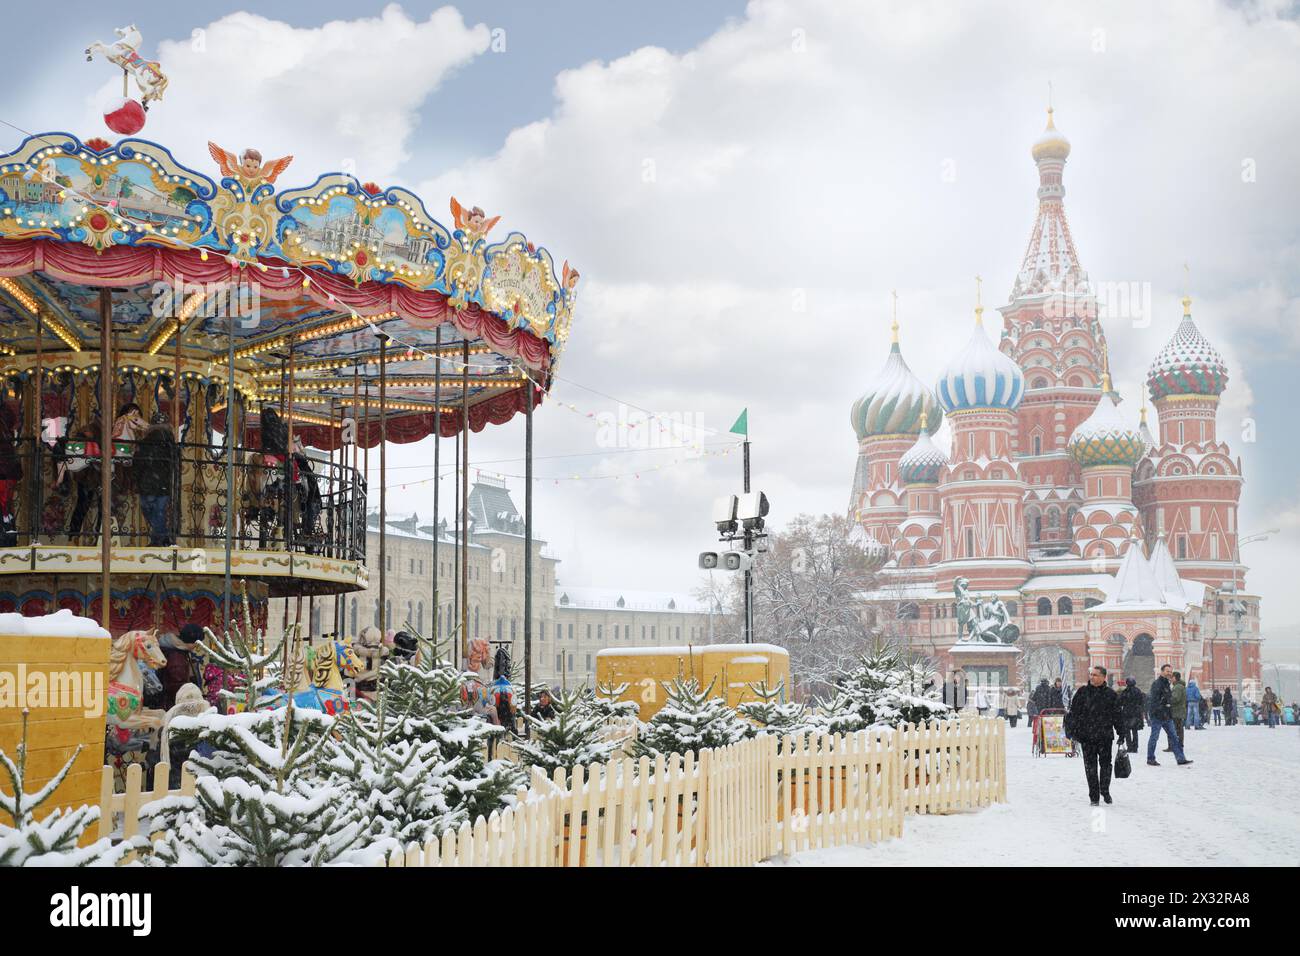 MOSKAU, RUSSLAND - 8. Dezember 2013: Karussell und St. Basilius Kathedrale während der Weihnachtsmesse (Messefläche ca. 2.000 qm). Stockfoto